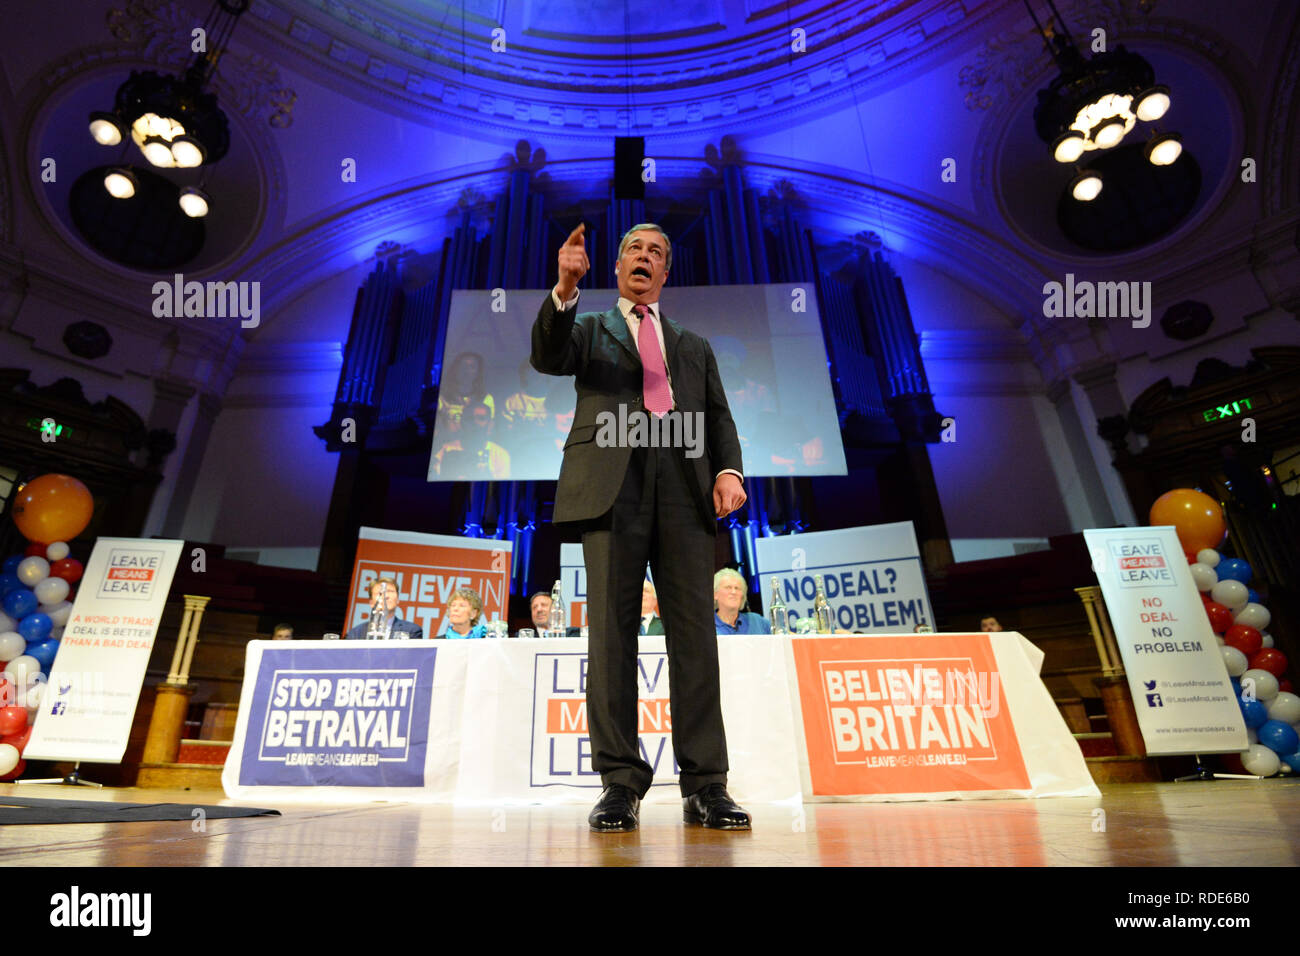 Nigel Farage bei einer Verlassen bedeutet Kundgebung an der Central Hall in London verlassen. Stockfoto